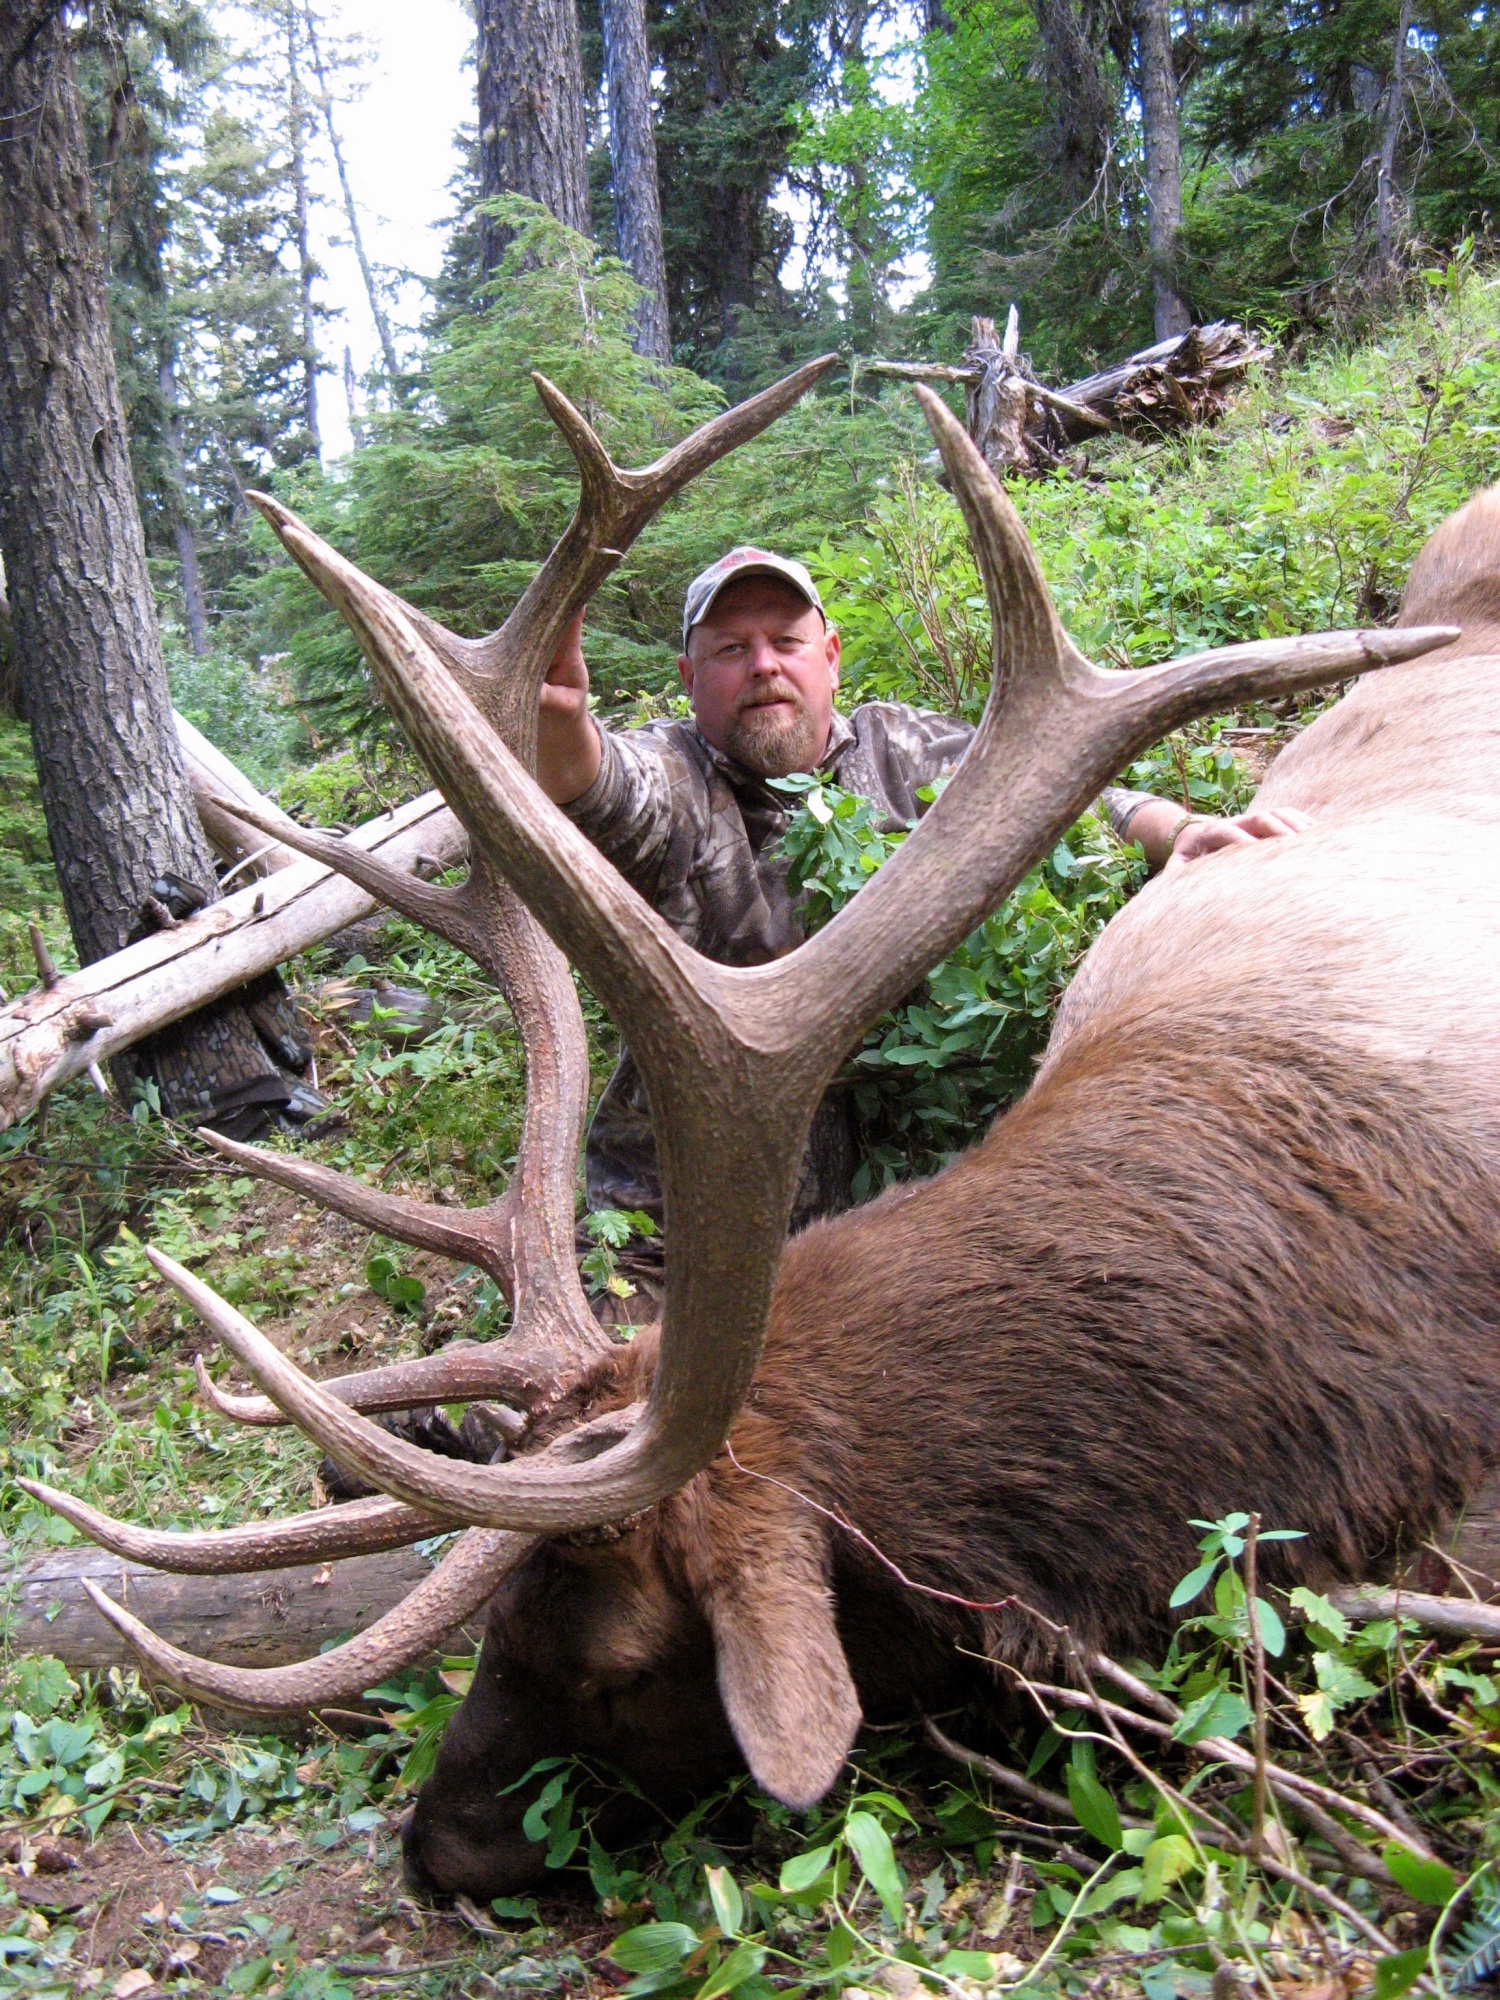 cabela's elk hunting trips